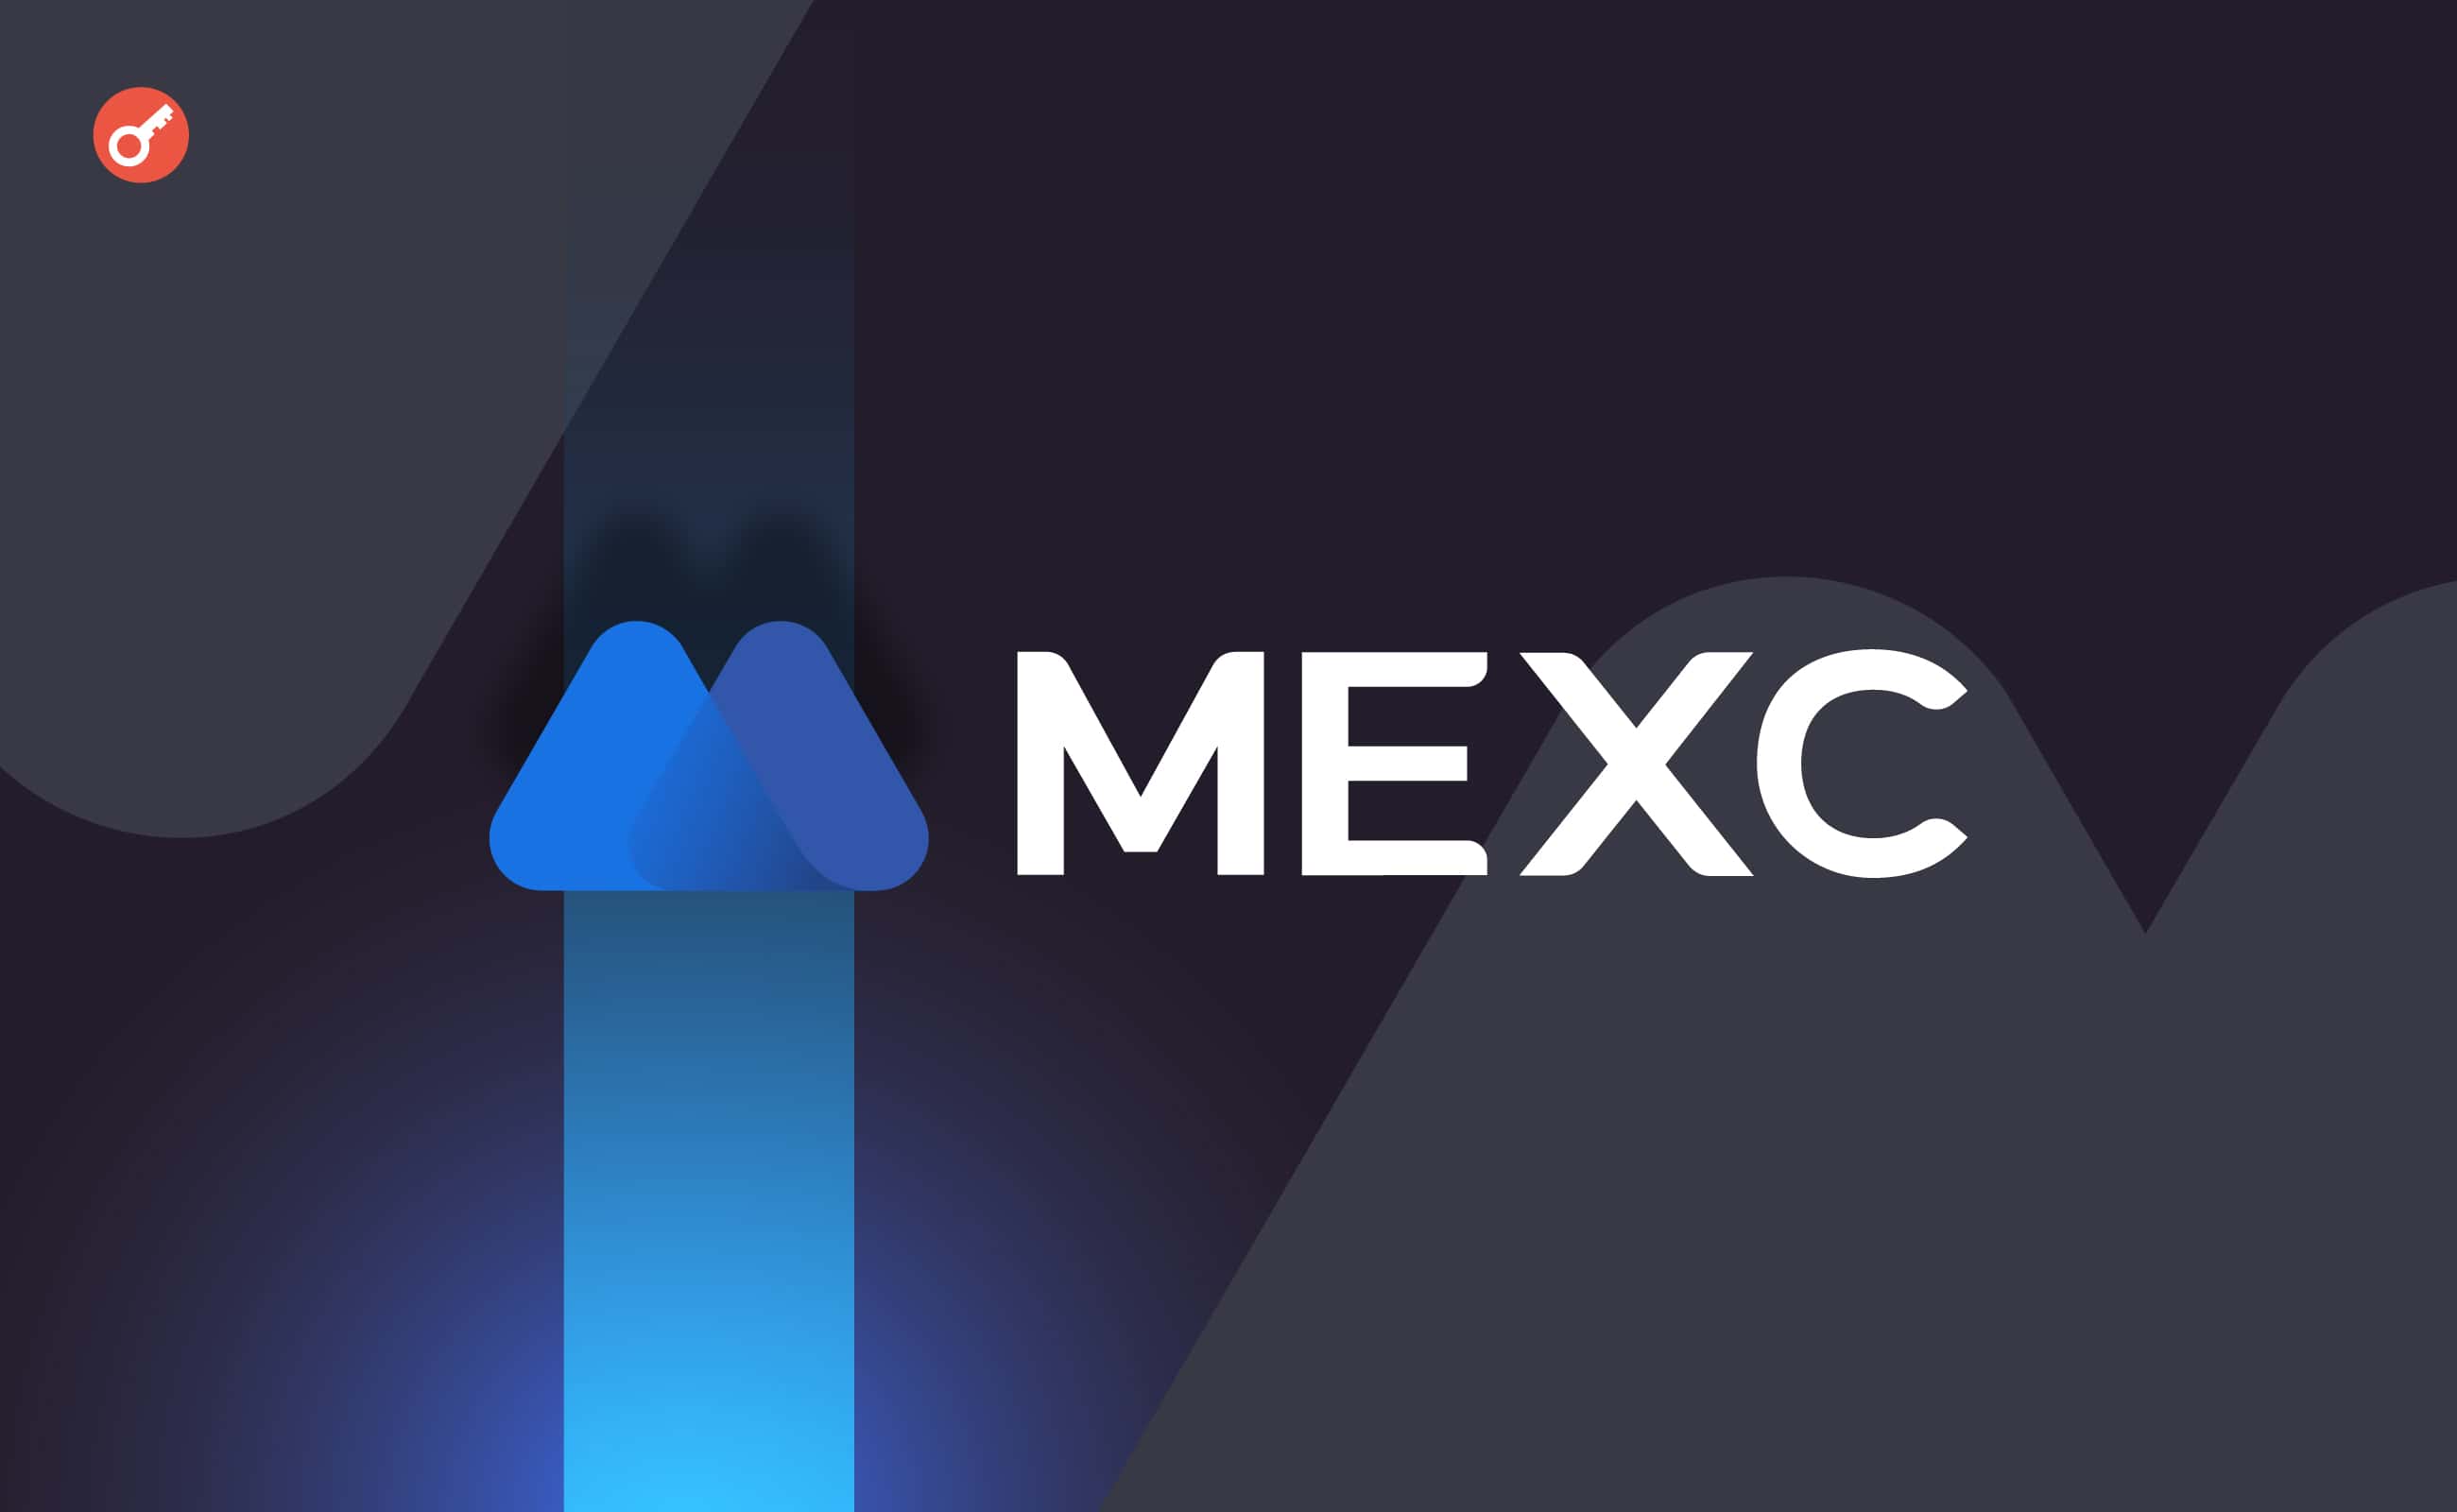 Користувачі заявили про проблеми з виведенням коштів з MEXC. Головний колаж новини.